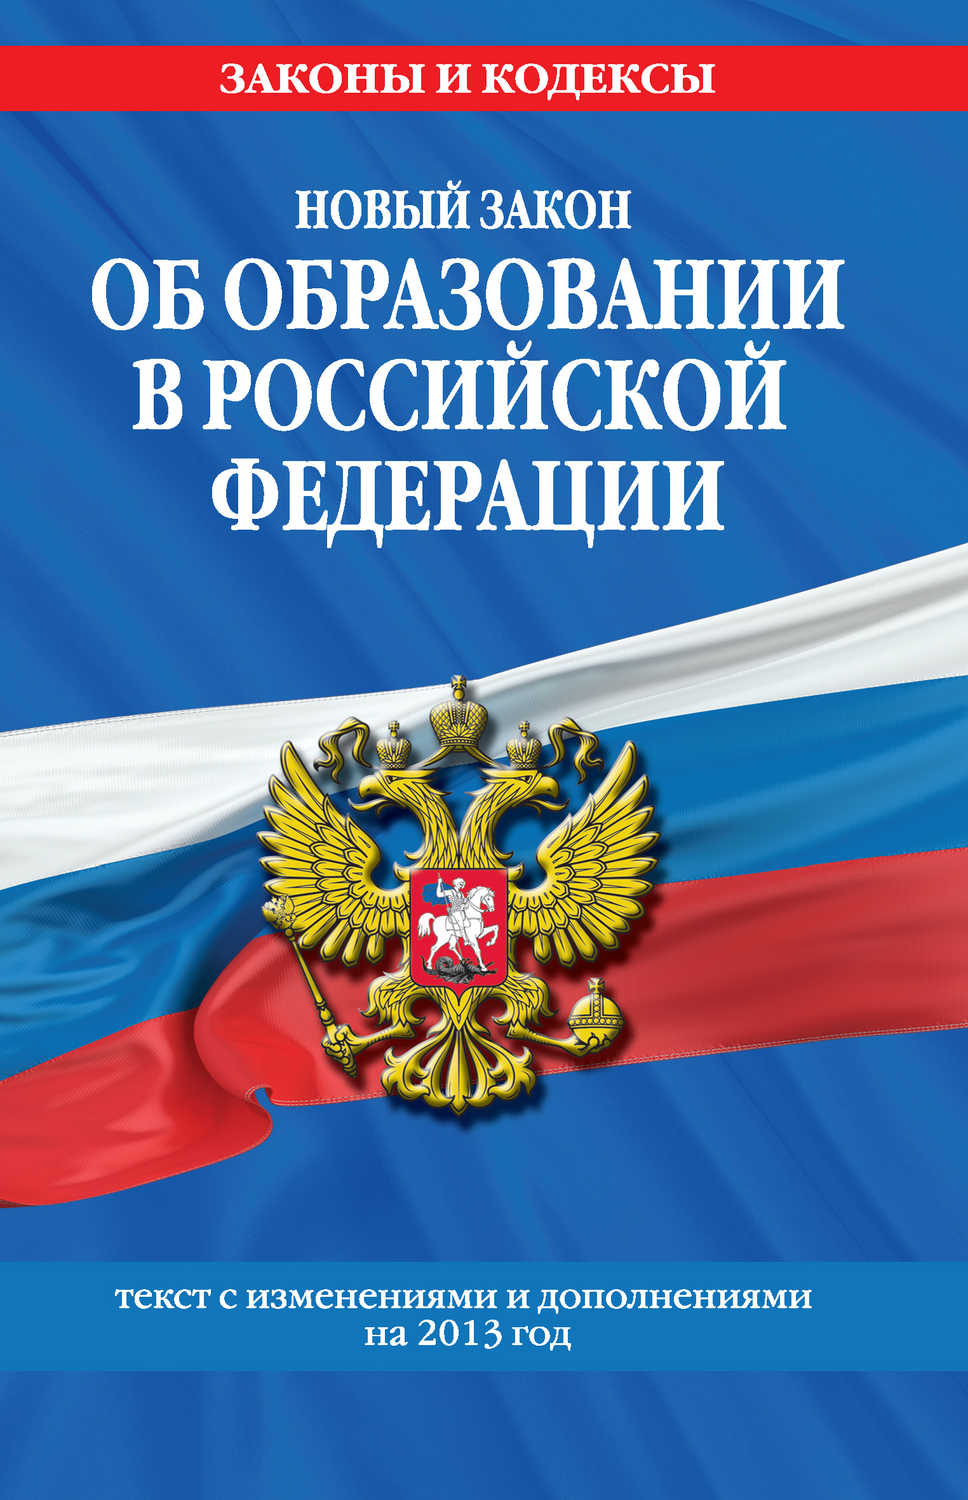 Новый Закон «Об образовании в Российской Федерации». Текст с изменениями и дополнениями на 2013 г